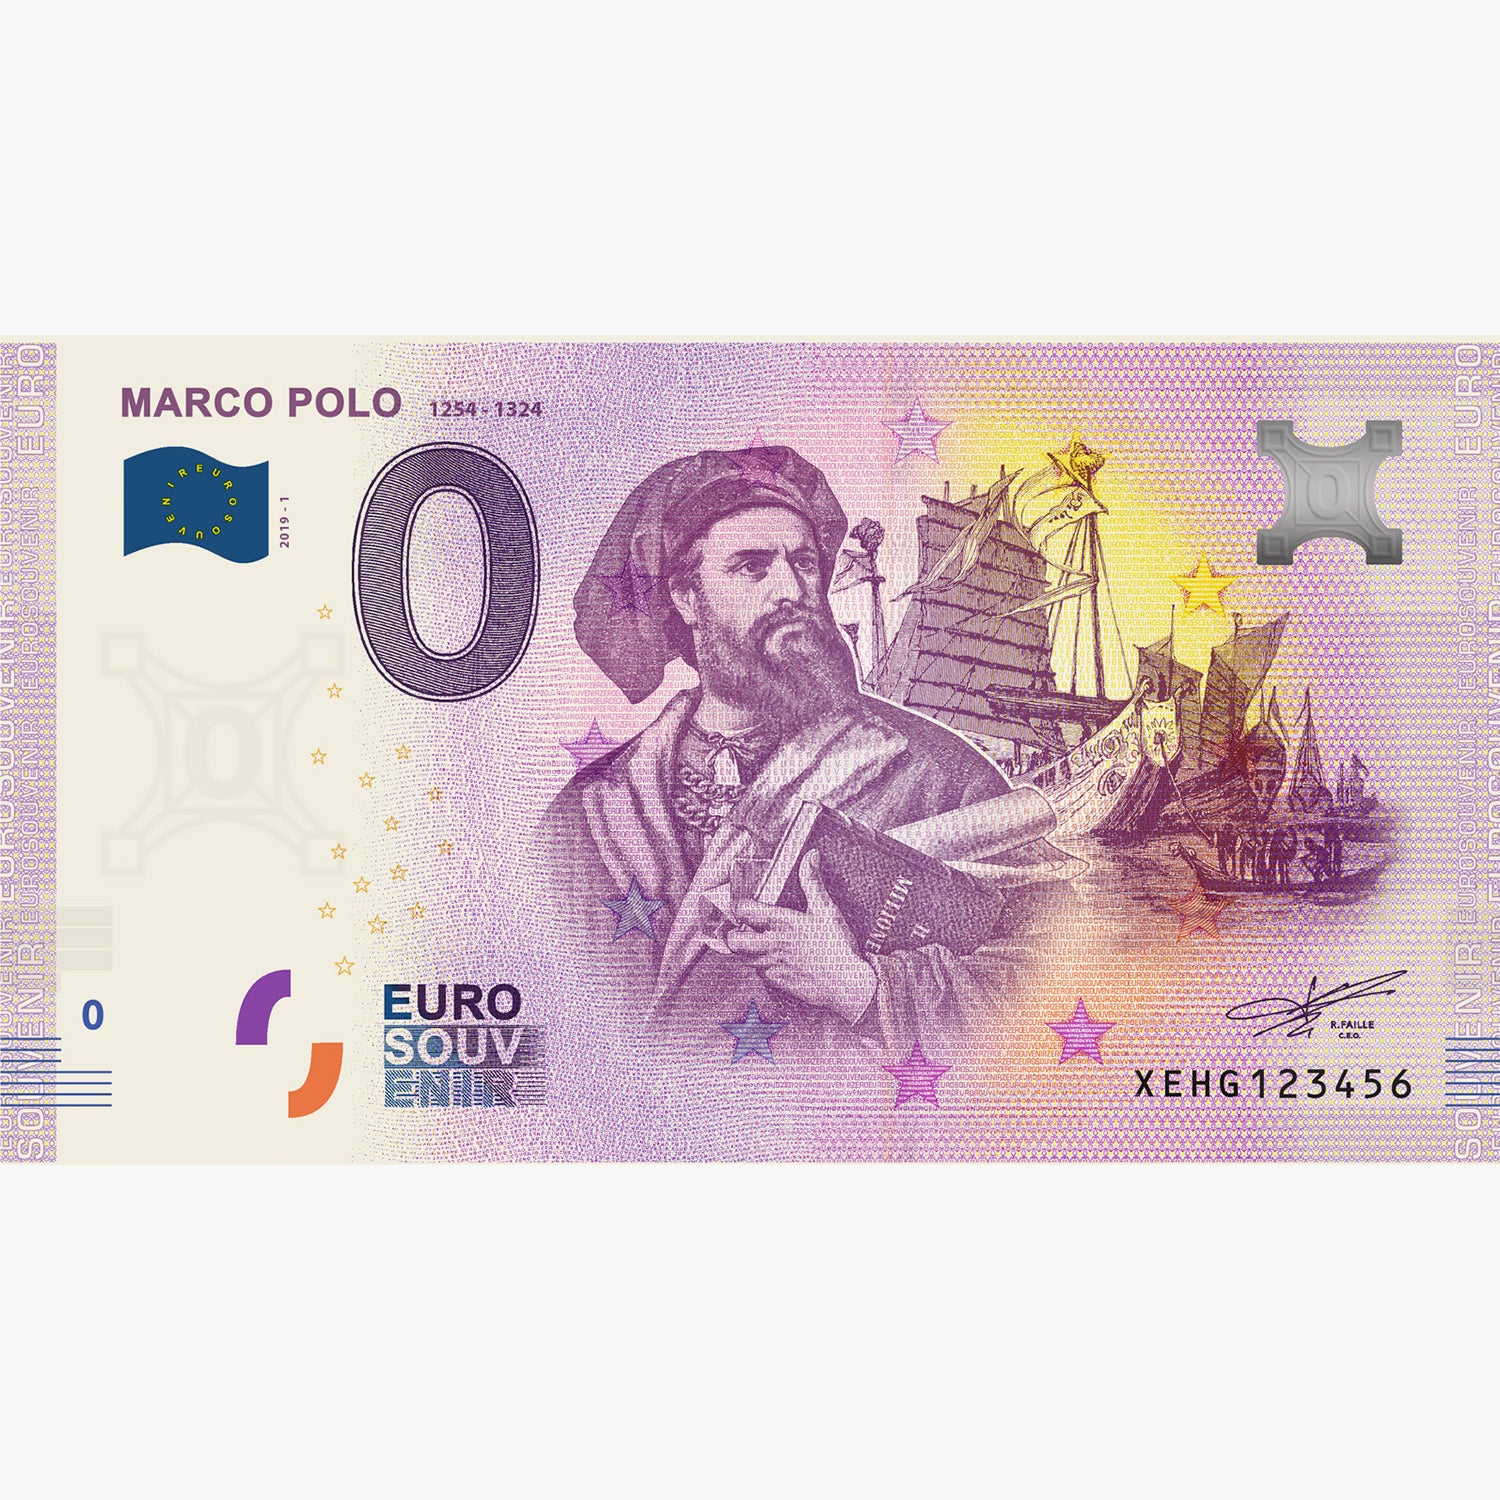 0 Euro Souvenir Note - Marco Polo